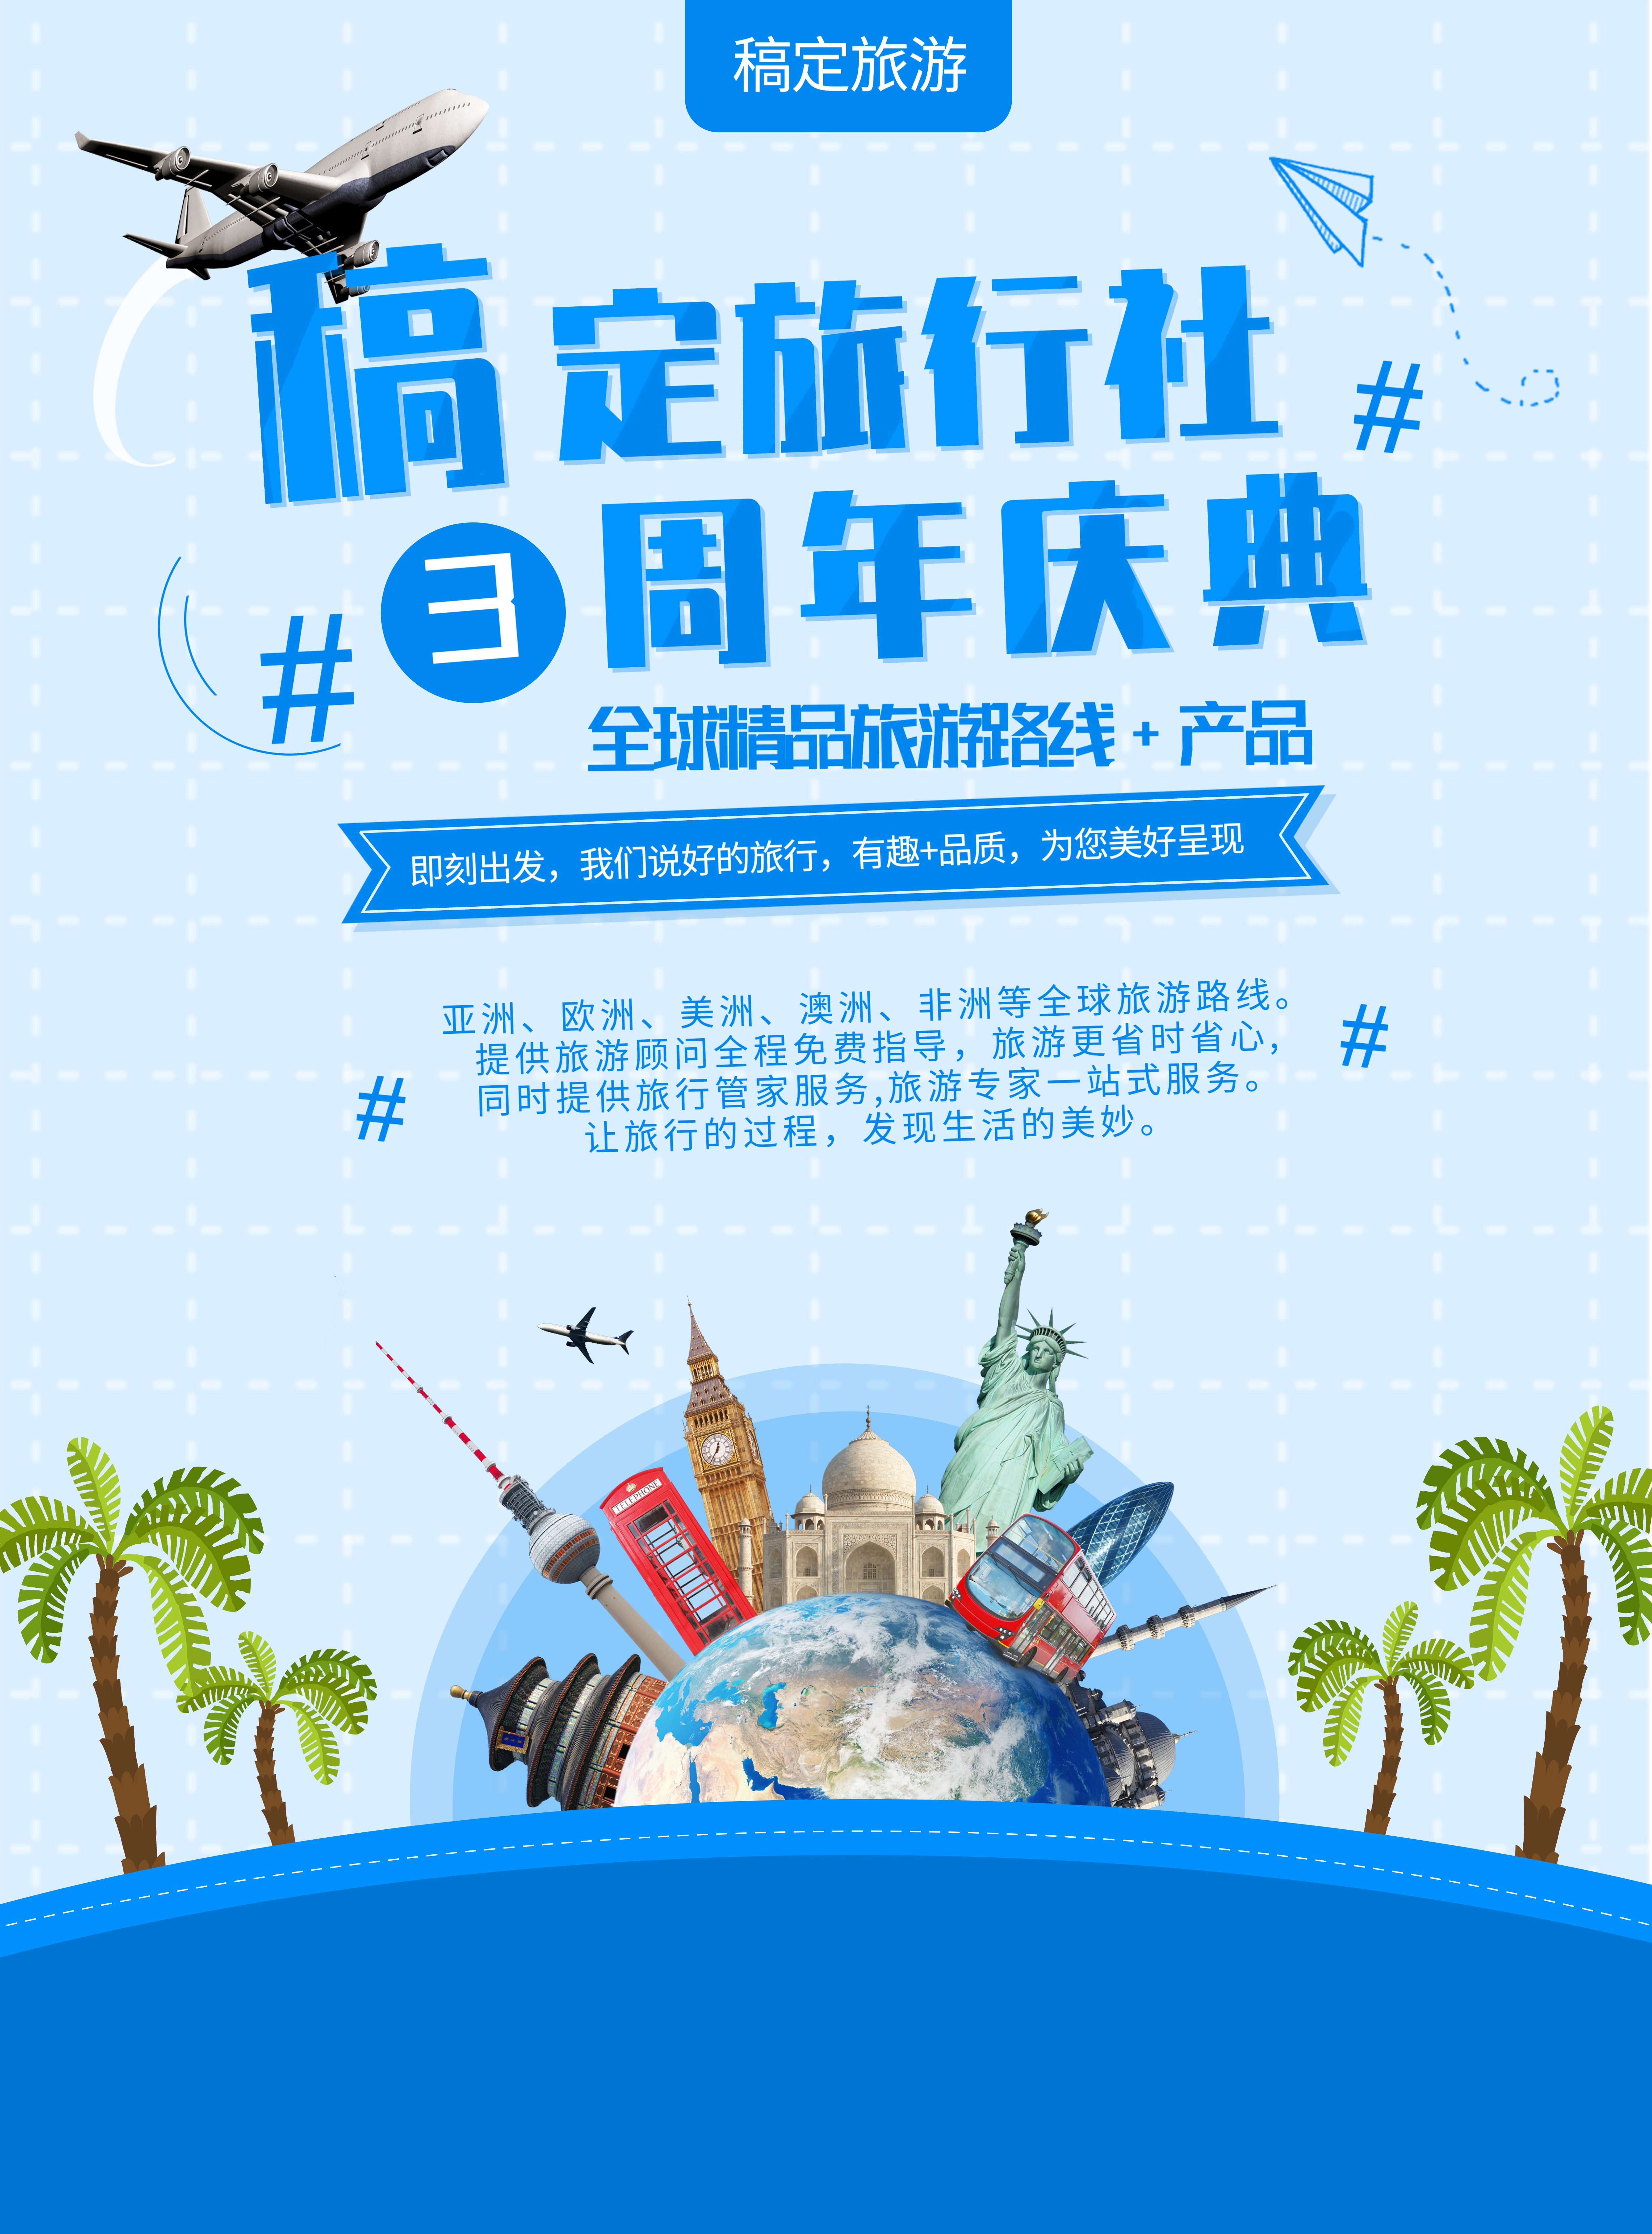 周年庆典旅行旅游路线产品介绍张贴海报